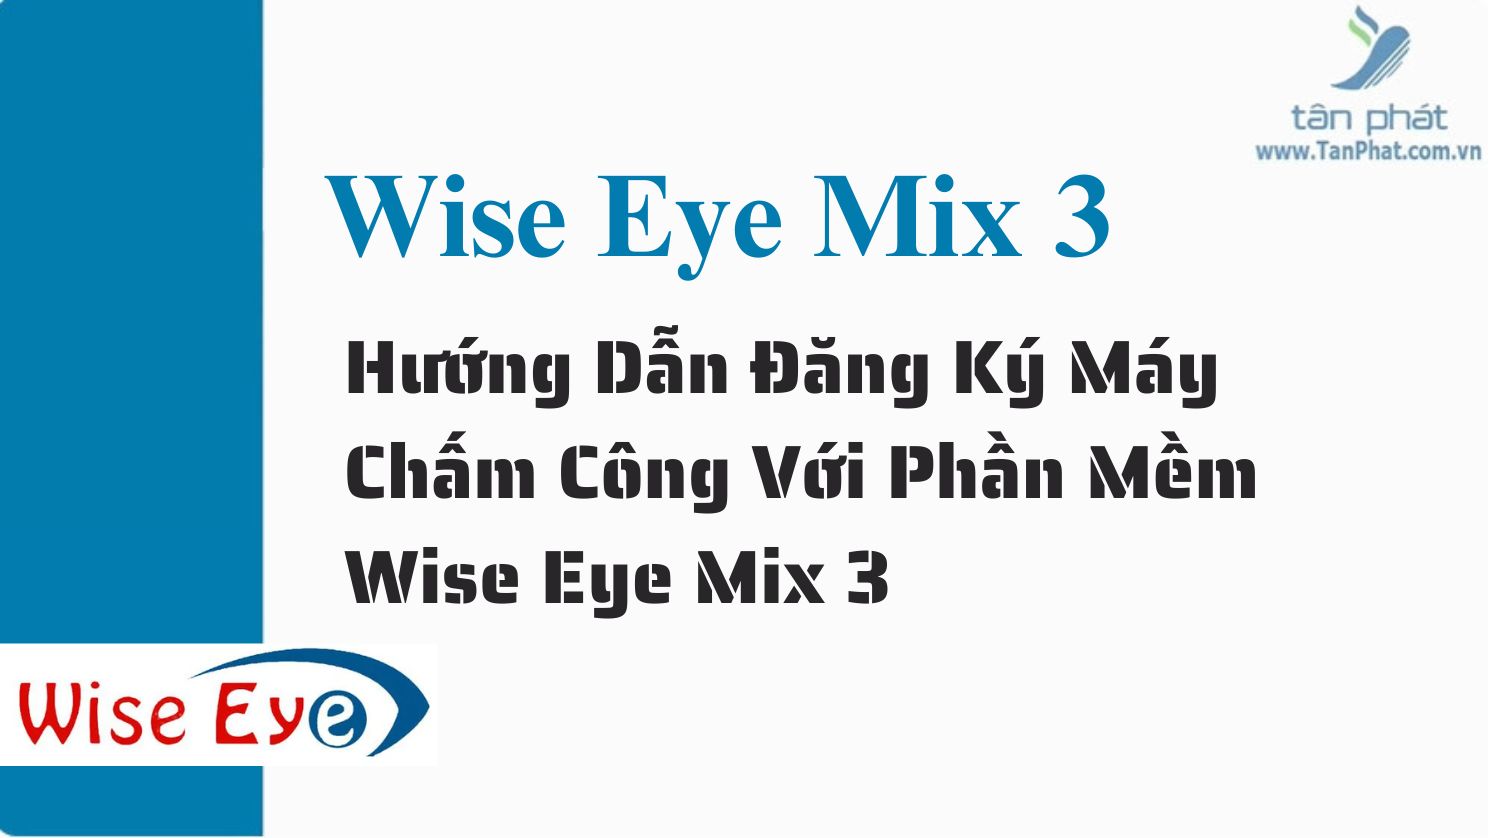 Hướng dẫn đăng ký máy chấm công với phần mềm Wise Eye Mix 3 trên máy RJ550 RJ550A RJ550 Plus RJ850A RJ1000 ZKT360 K300 X938C X958C X958A  T8plus X989C RJ919 RJ879C T6C  B3C SC403 I